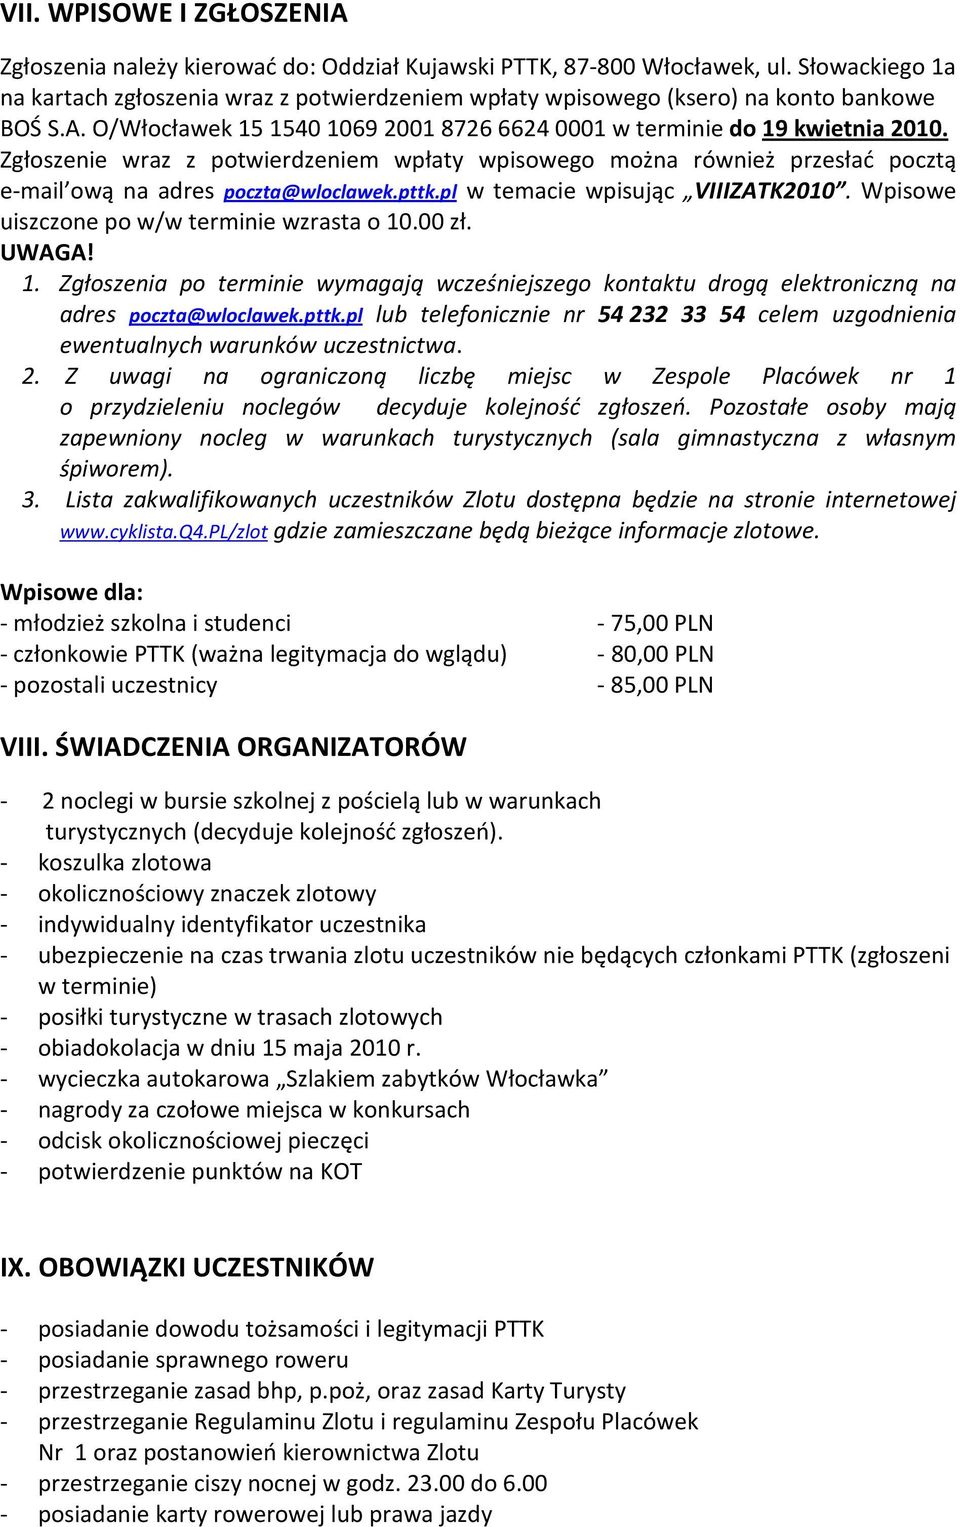 Zgłoszenie wraz z potwierdzeniem wpłaty wpisowego można również przesłać pocztą e-mail ową na adres poczta@wloclawek.pttk.pl w temacie wpisując VIIIZATK2010.